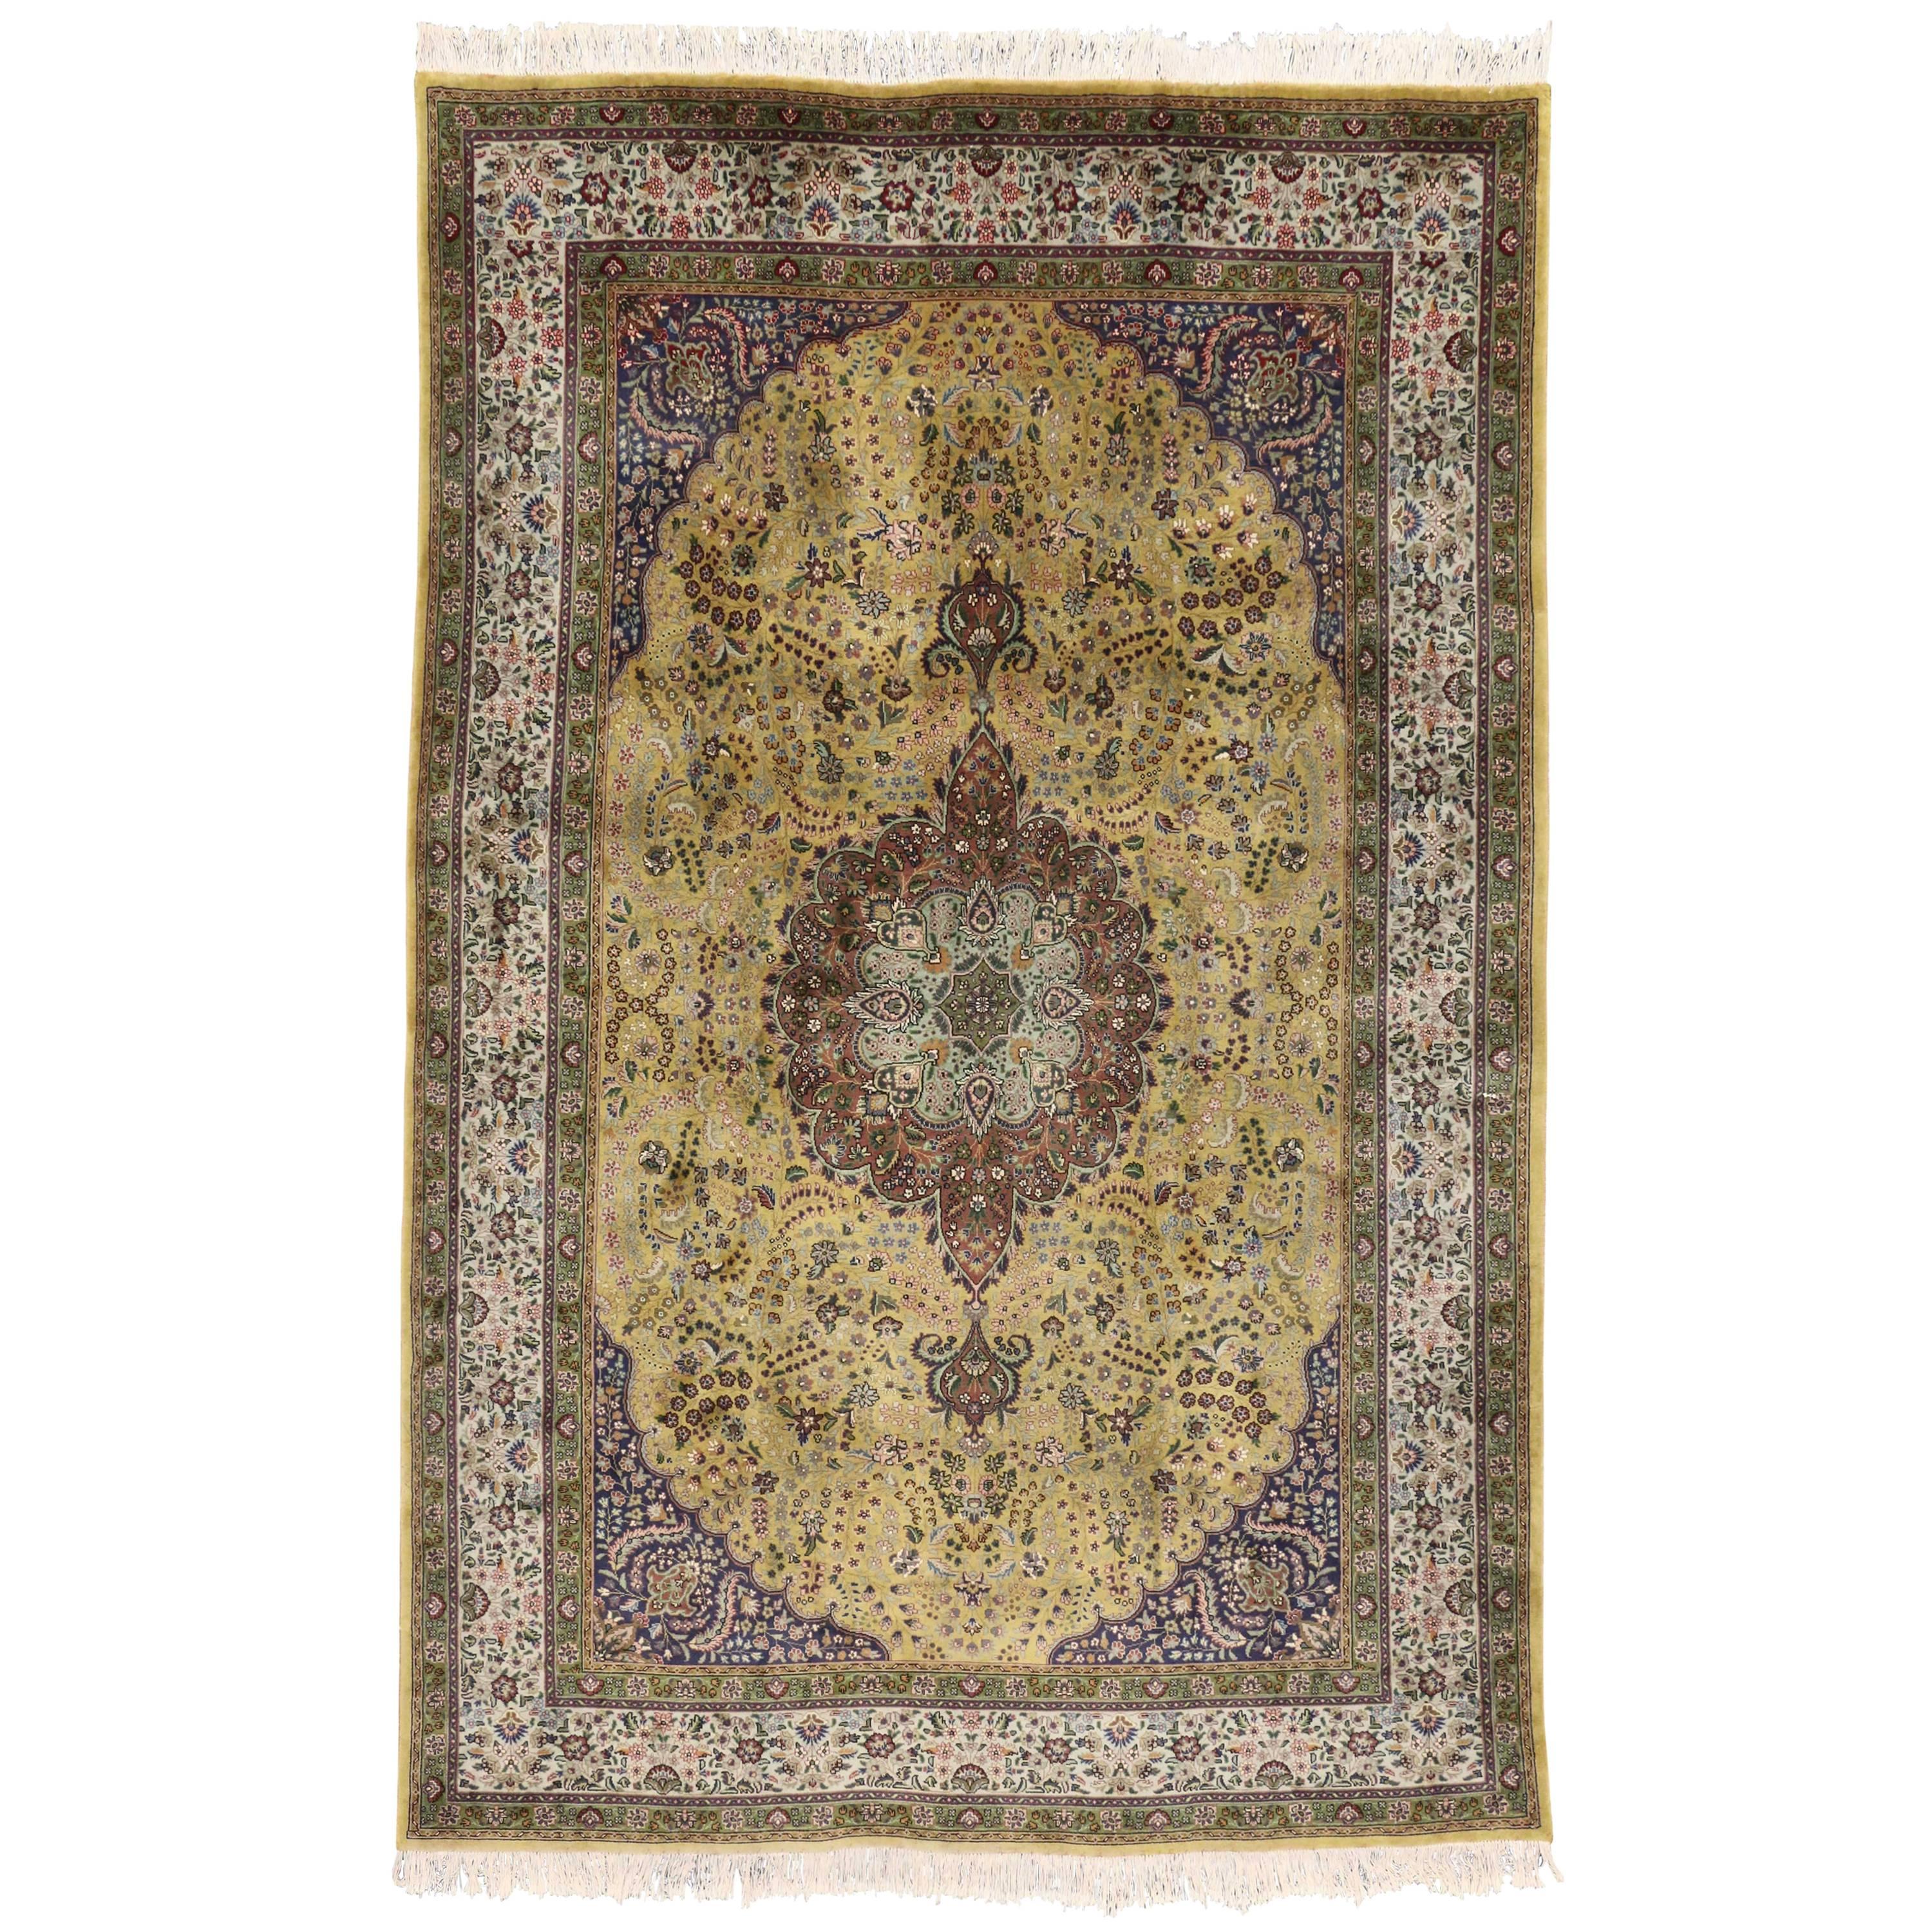 Persischer Täbris-Teppich im Art nouveau-Stil mit arabischem Jugendstil